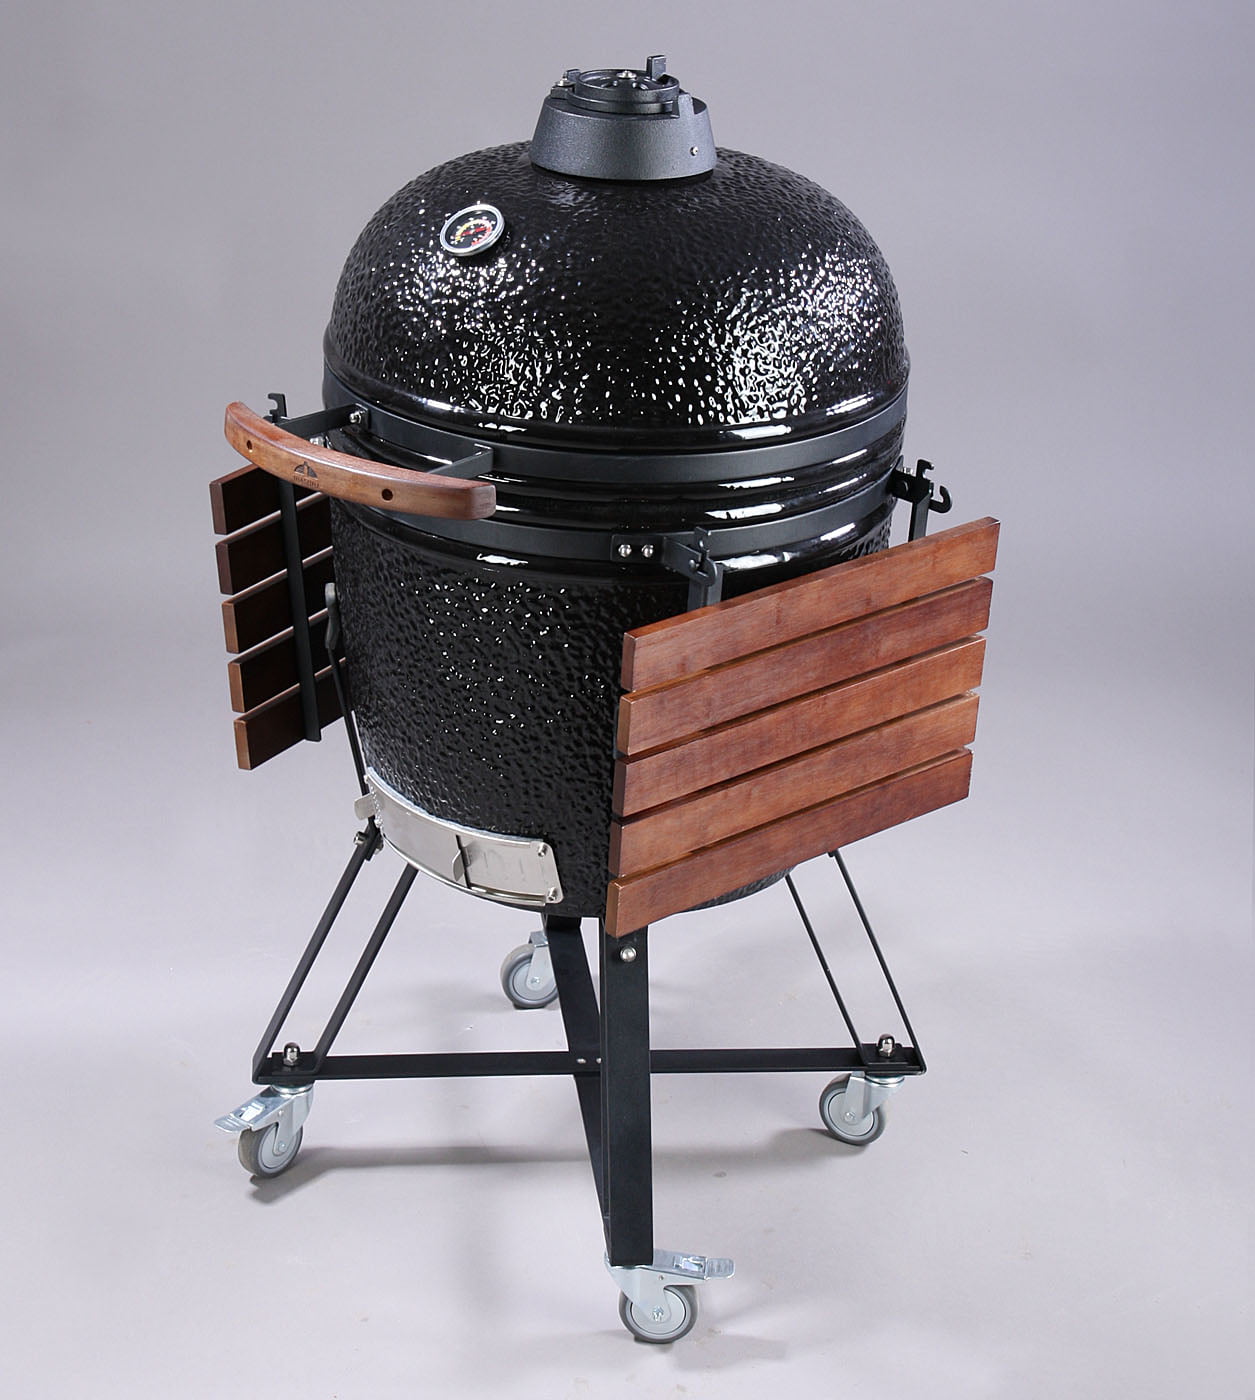 Kamado grill -